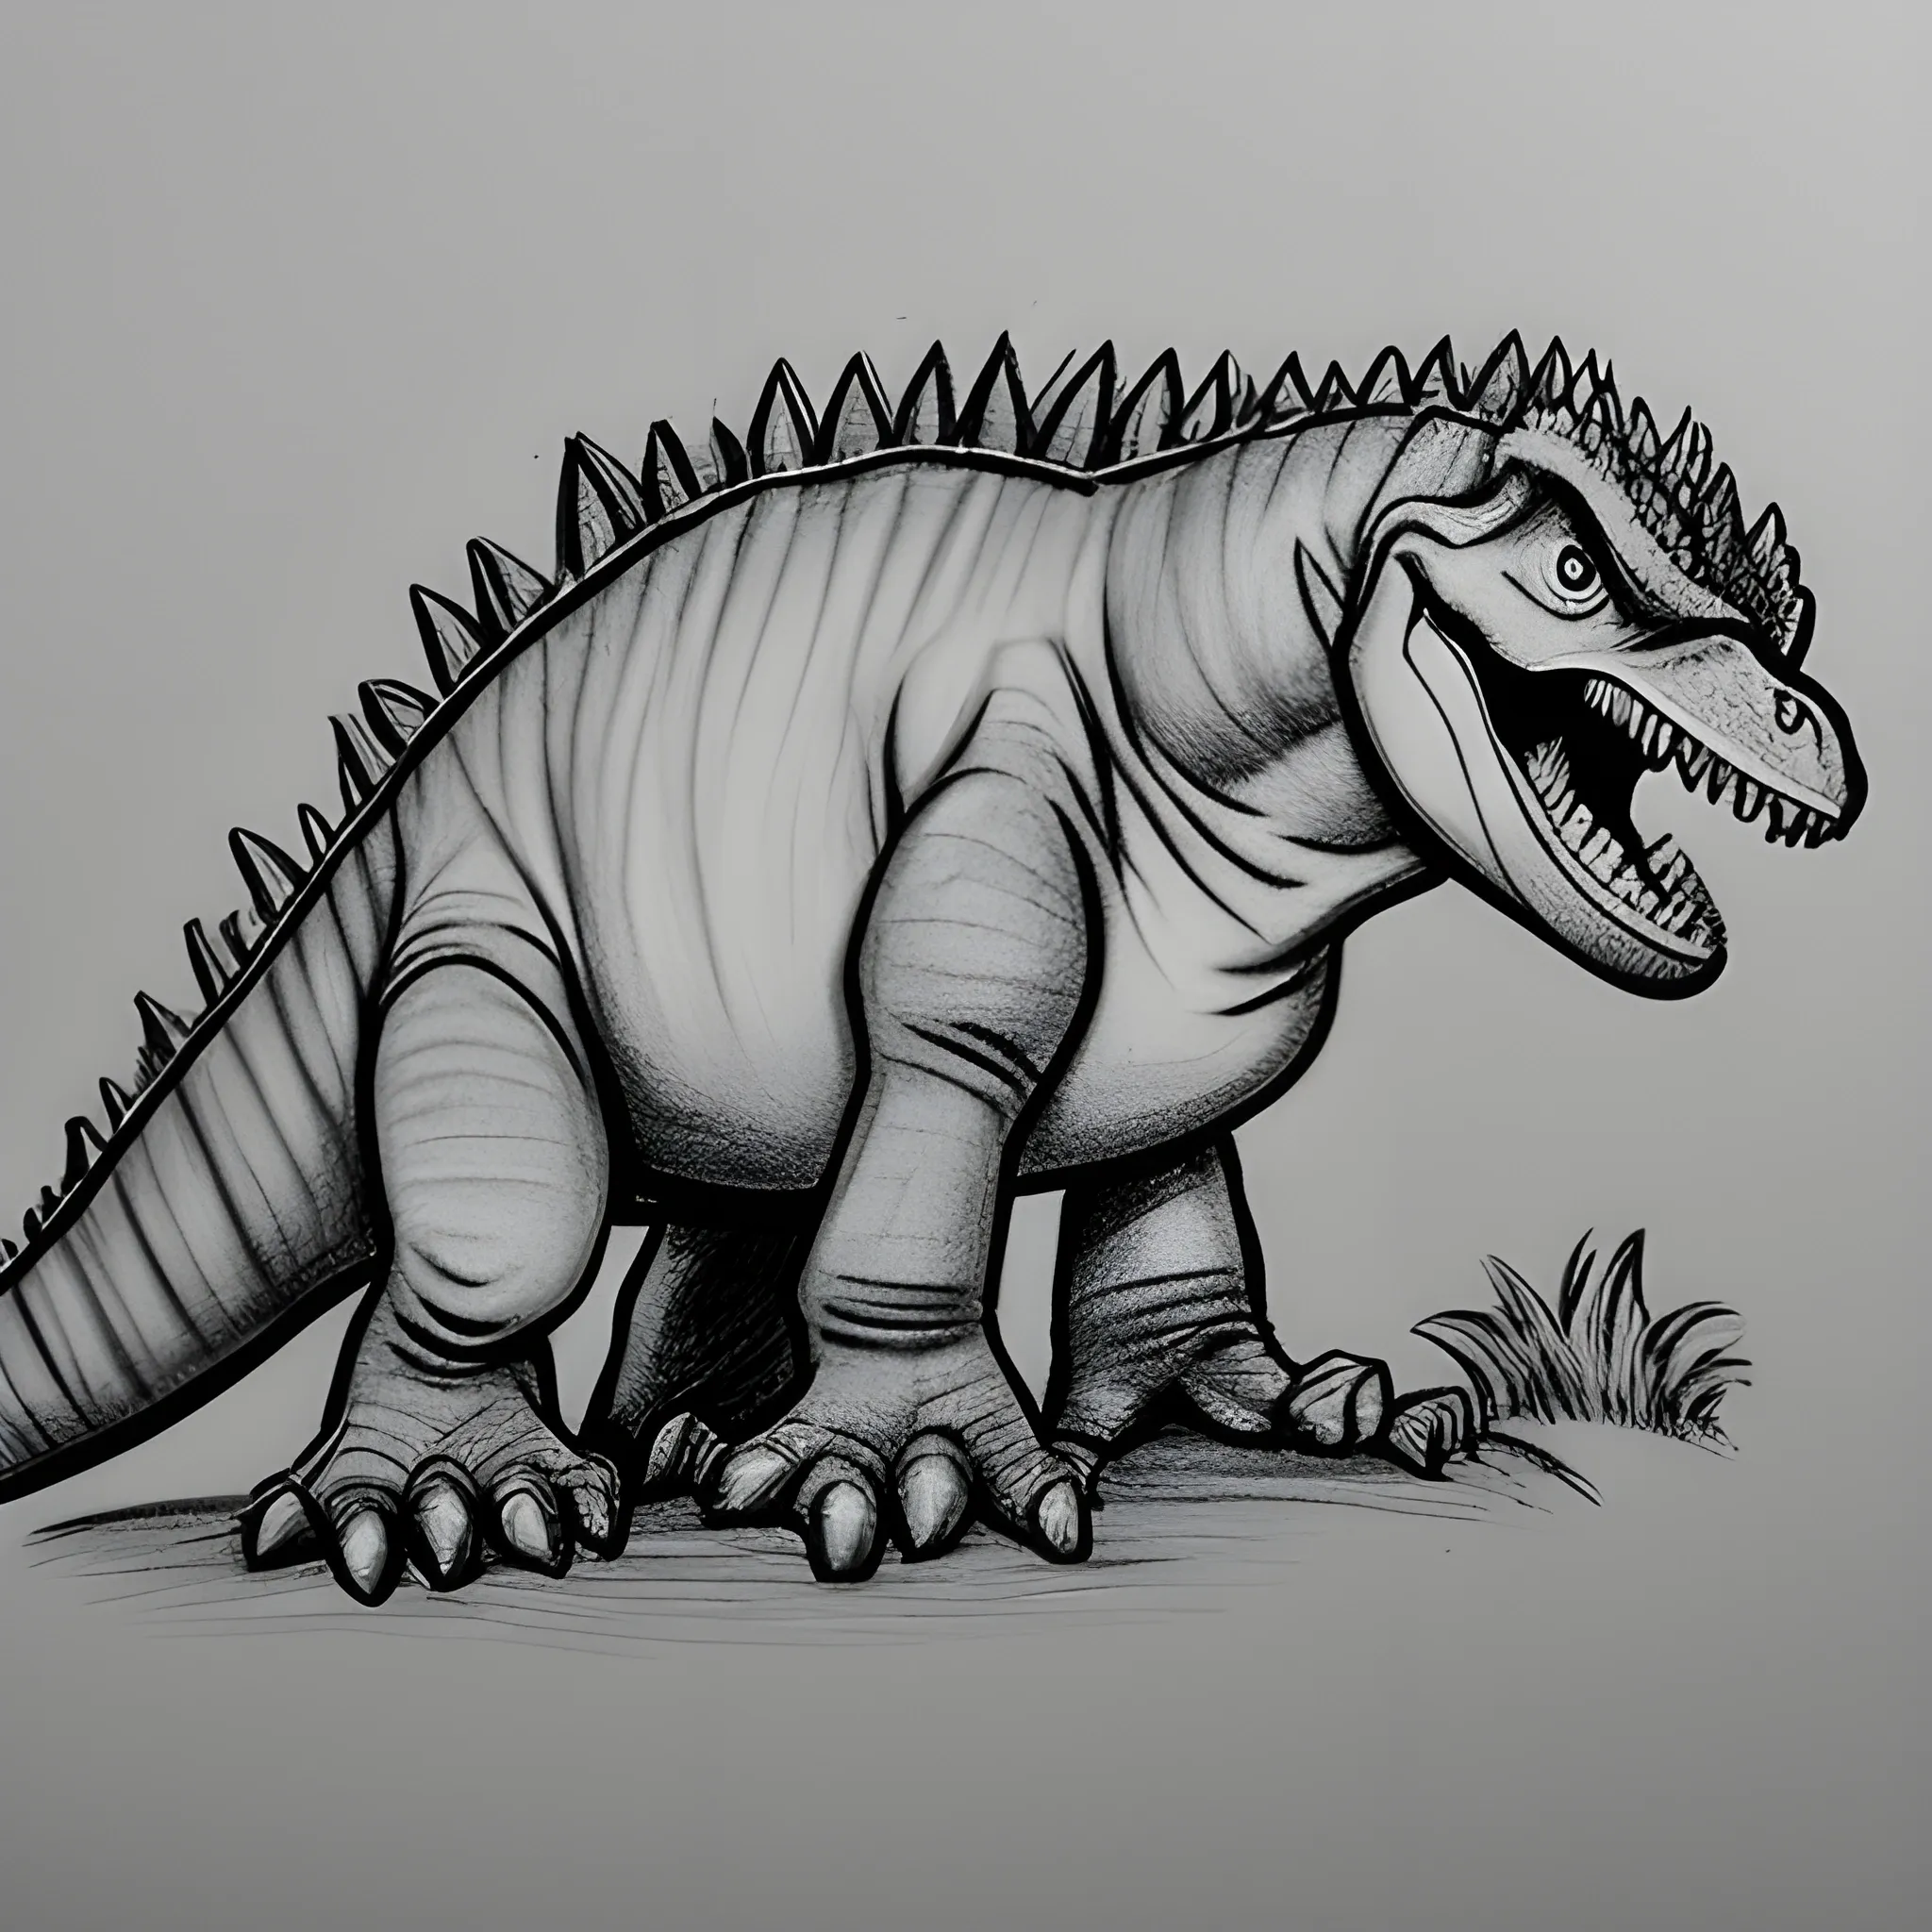 Tiranossauro rex páginas para colorir para crianças